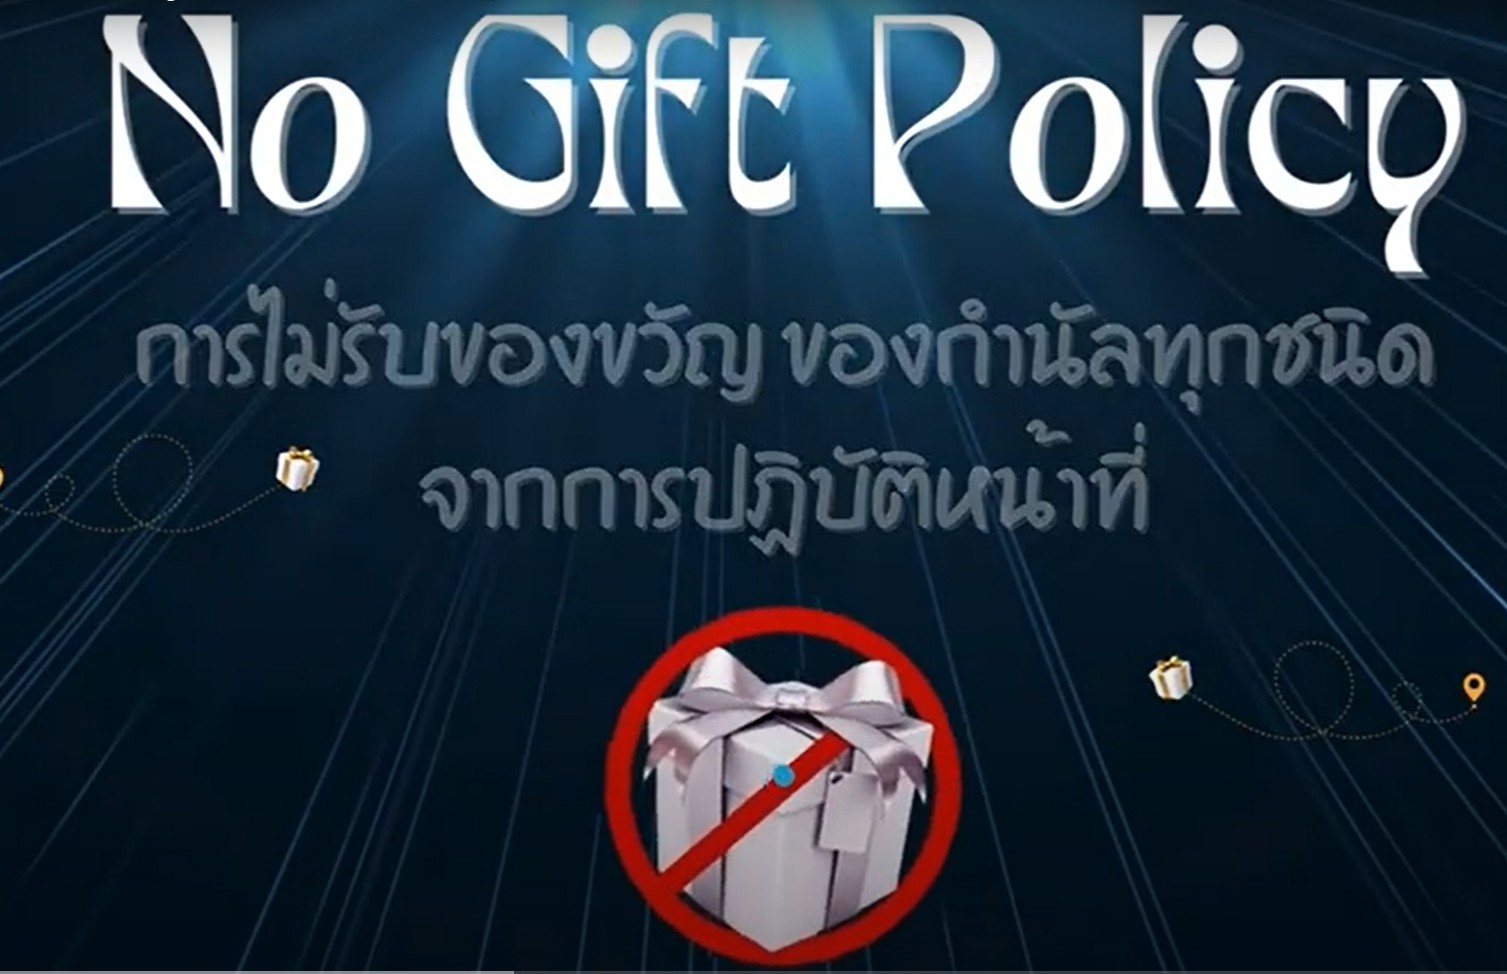 No gift policy การไม่รับของขวัญ ของกำนัลทุกชนิดจากการปฏิบัติหน้าที่